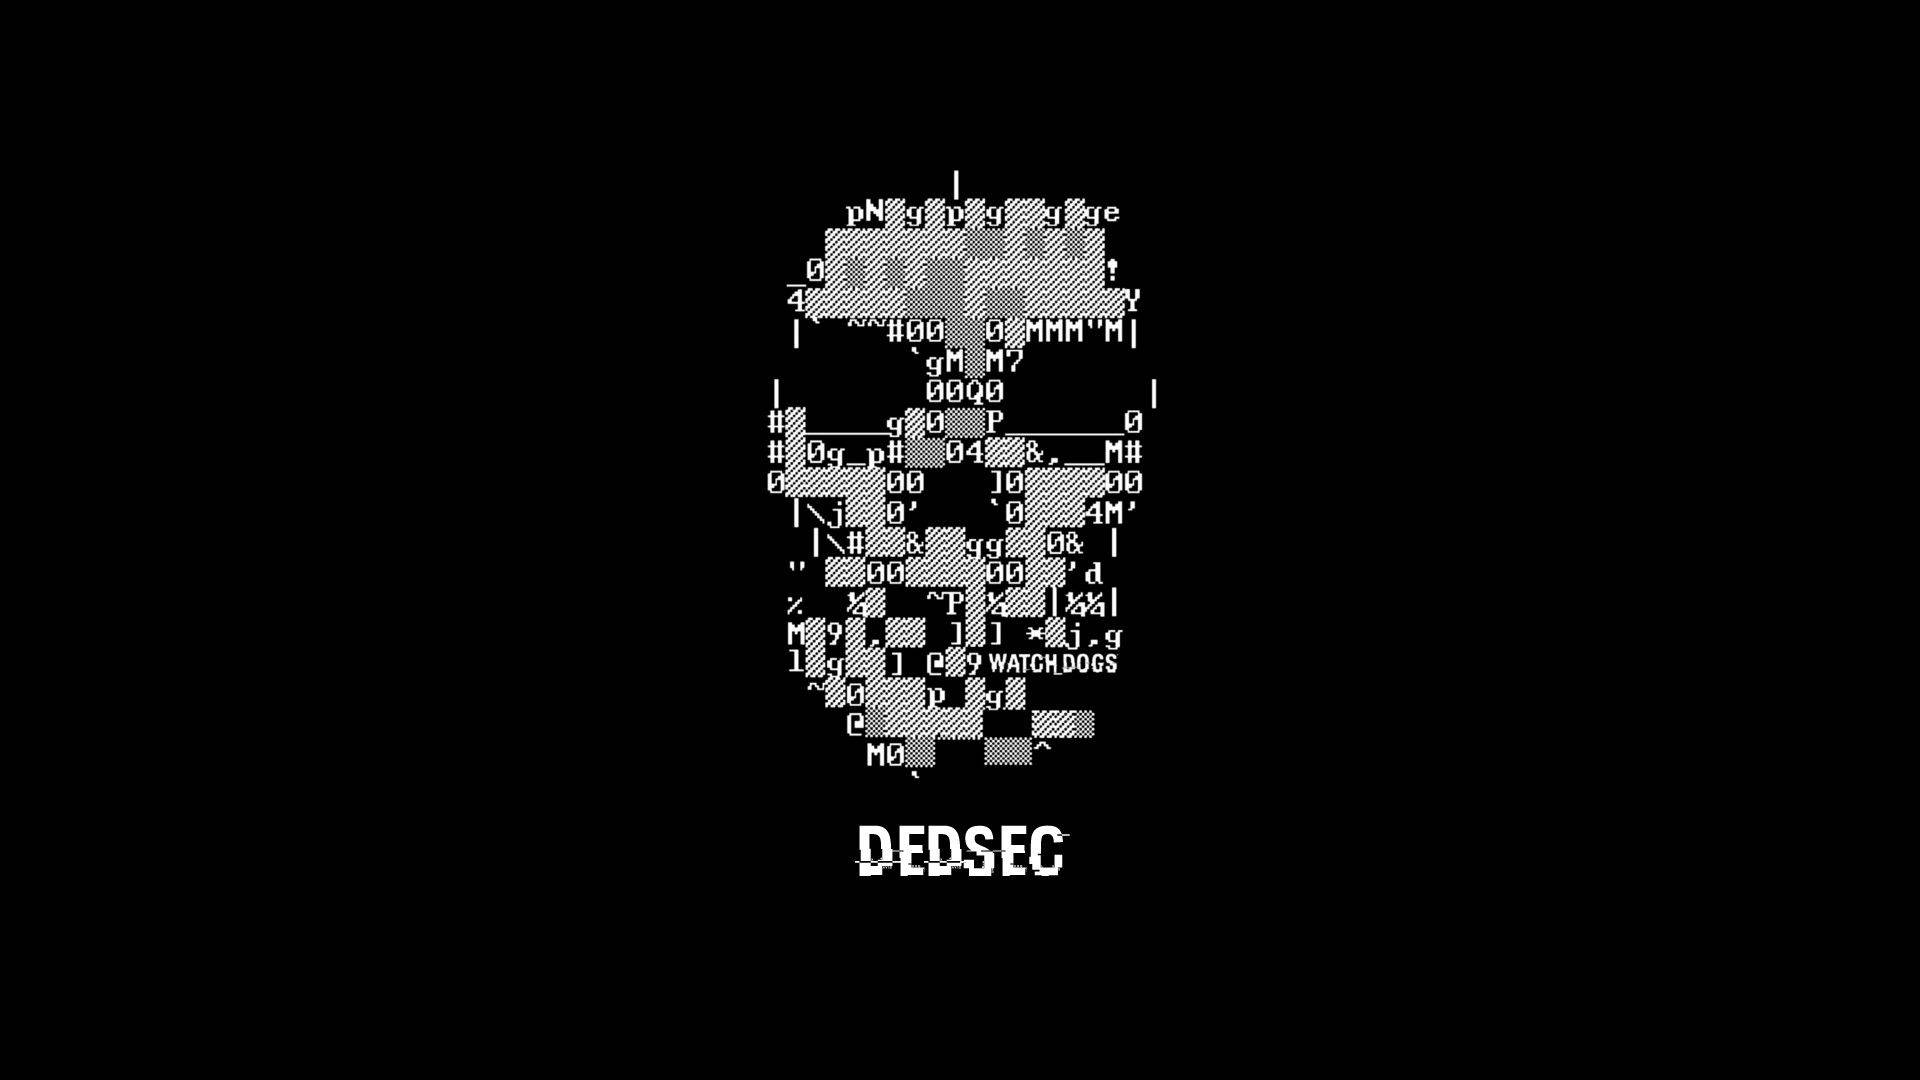 Hacker Dedsec Skull Full Hd Background